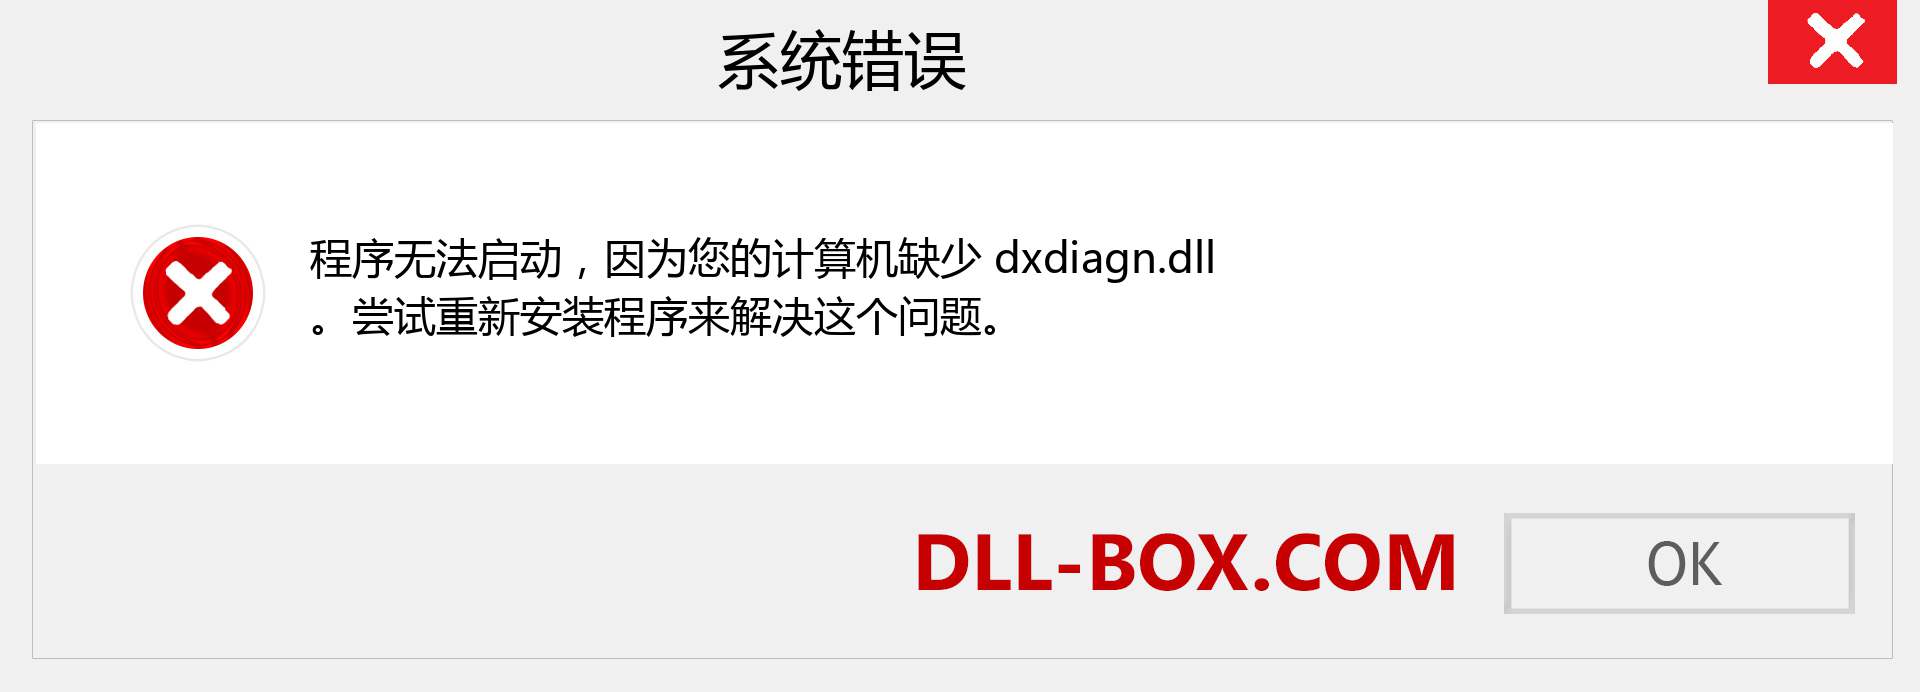 dxdiagn.dll 文件丢失？。 适用于 Windows 7、8、10 的下载 - 修复 Windows、照片、图像上的 dxdiagn dll 丢失错误